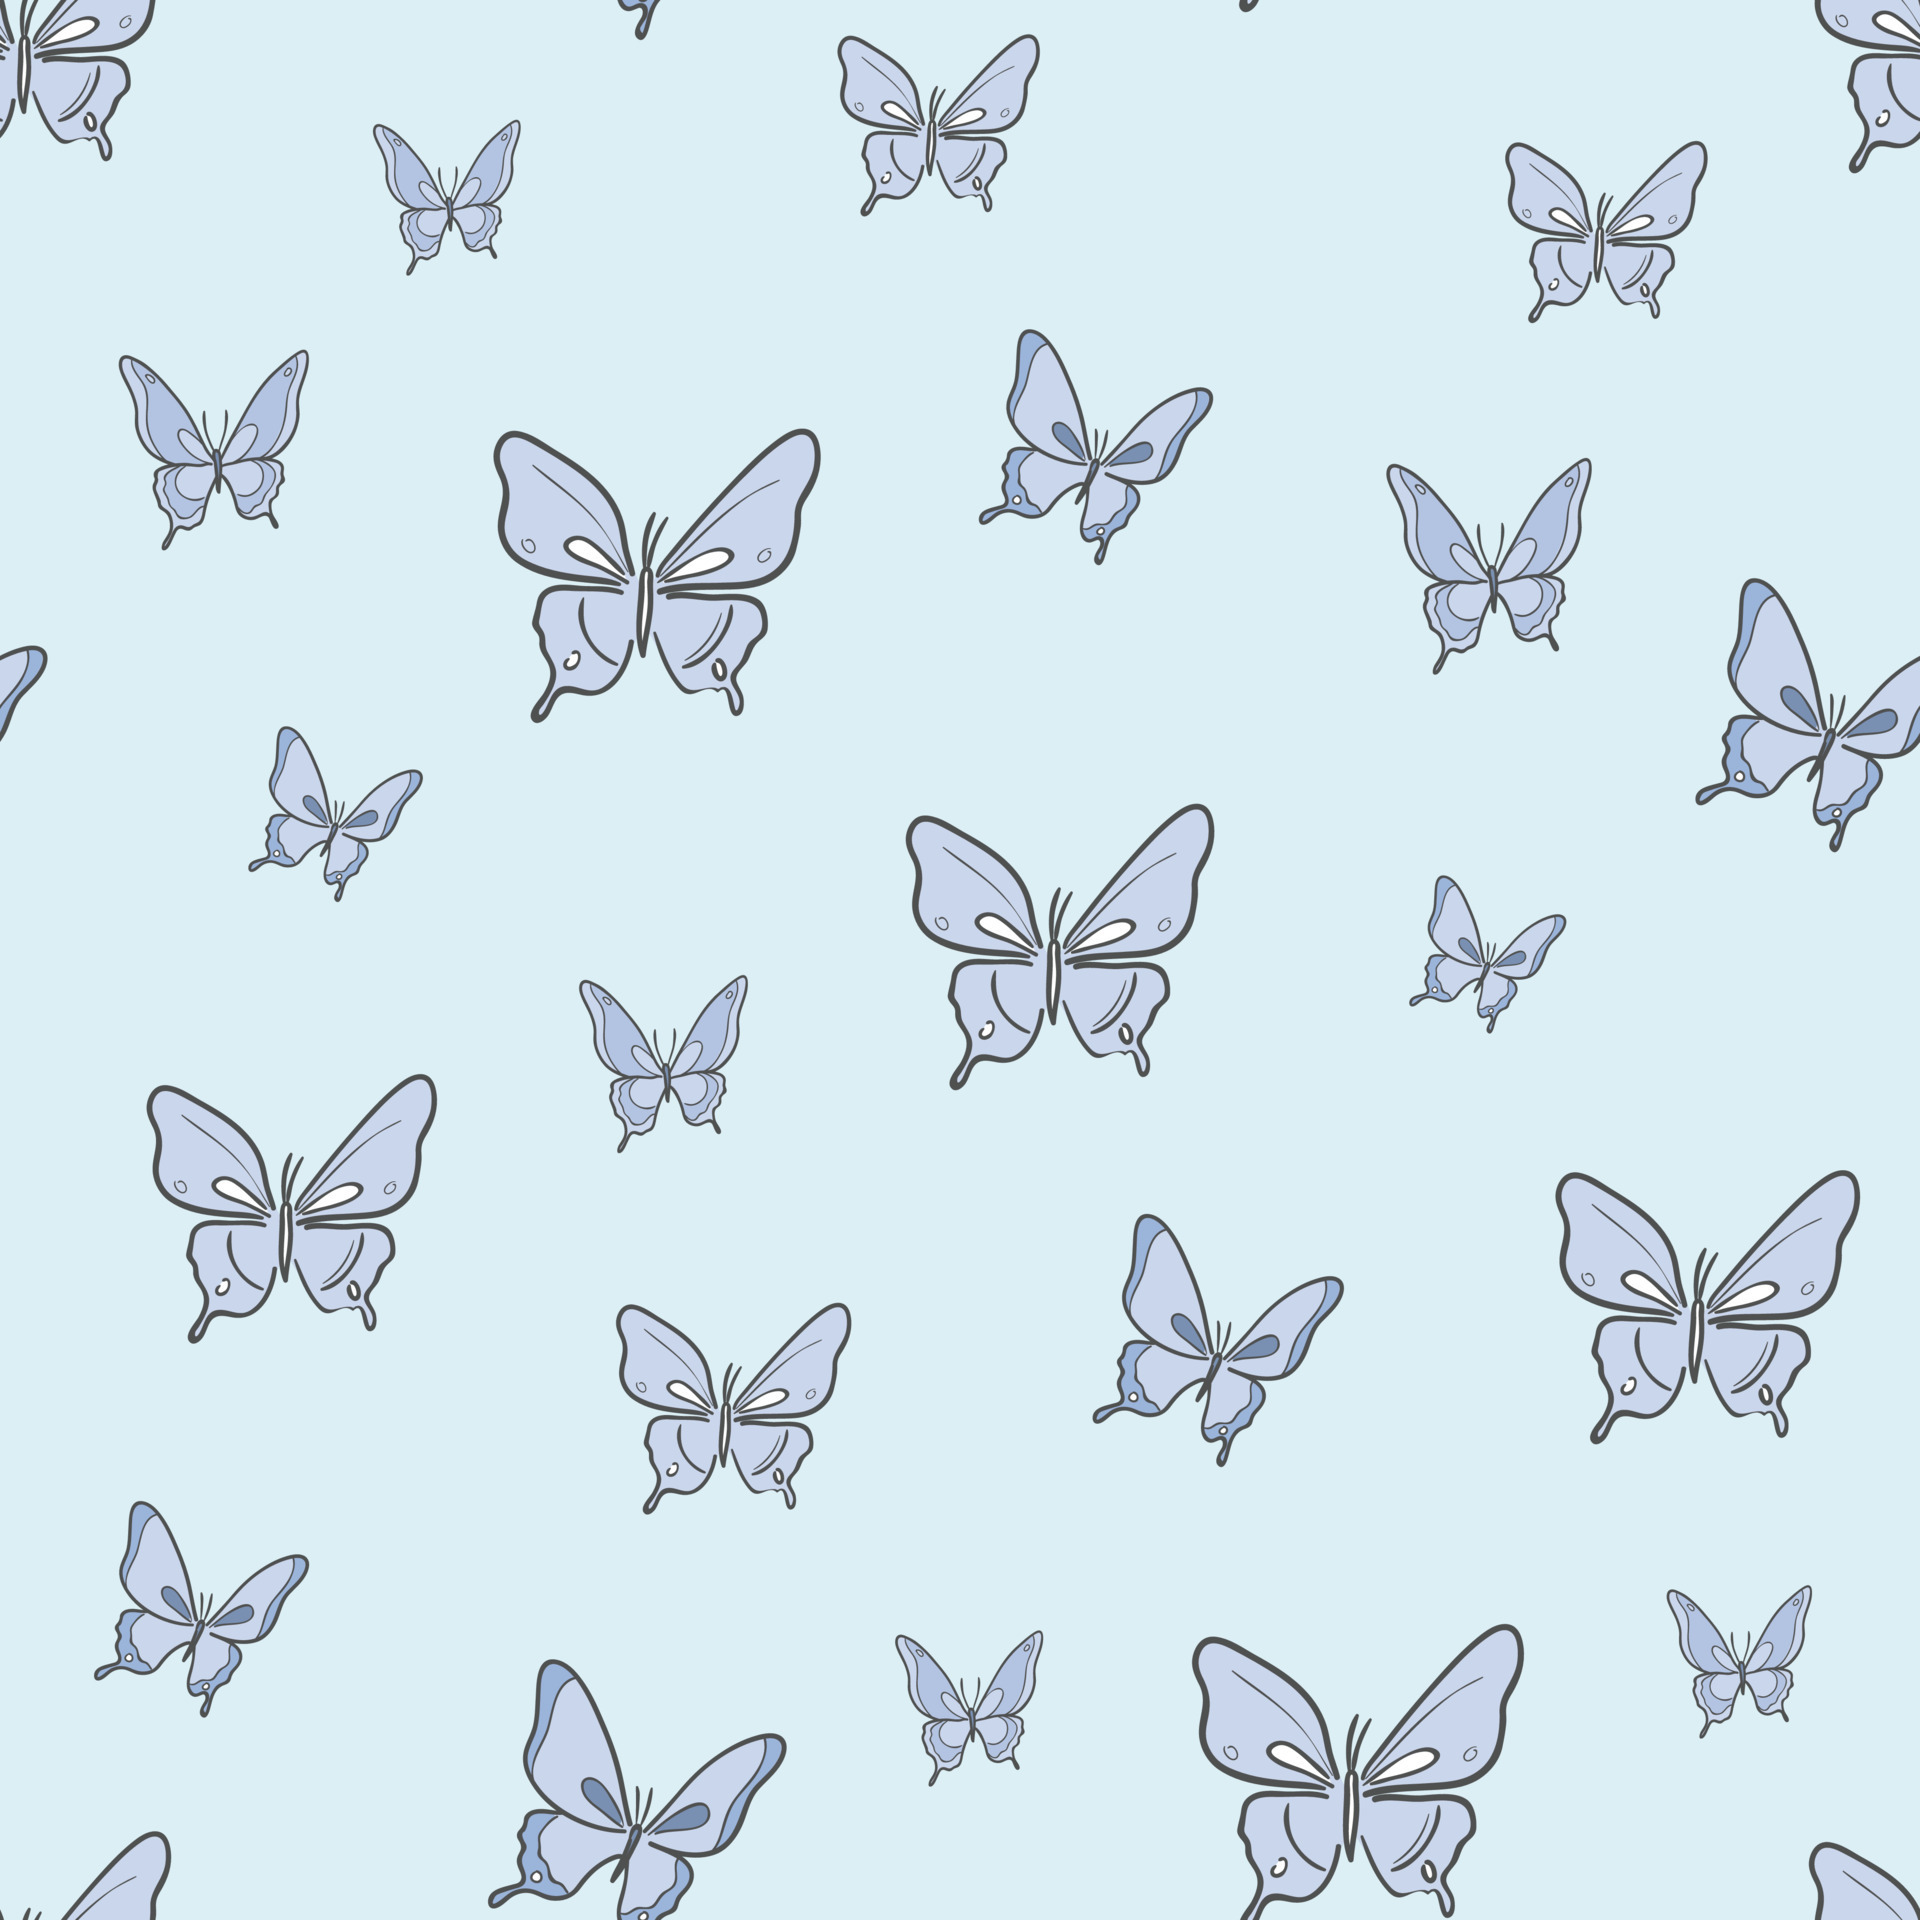 Mẫu vector bướm xanh sẽ khiến bạn say mê với những chiếc bướm dịu dàng đang bay lượn trên nền những họa tiết tinh tế. Hãy truy cập để chiêm ngưỡng hình ảnh đầy sức sống này.